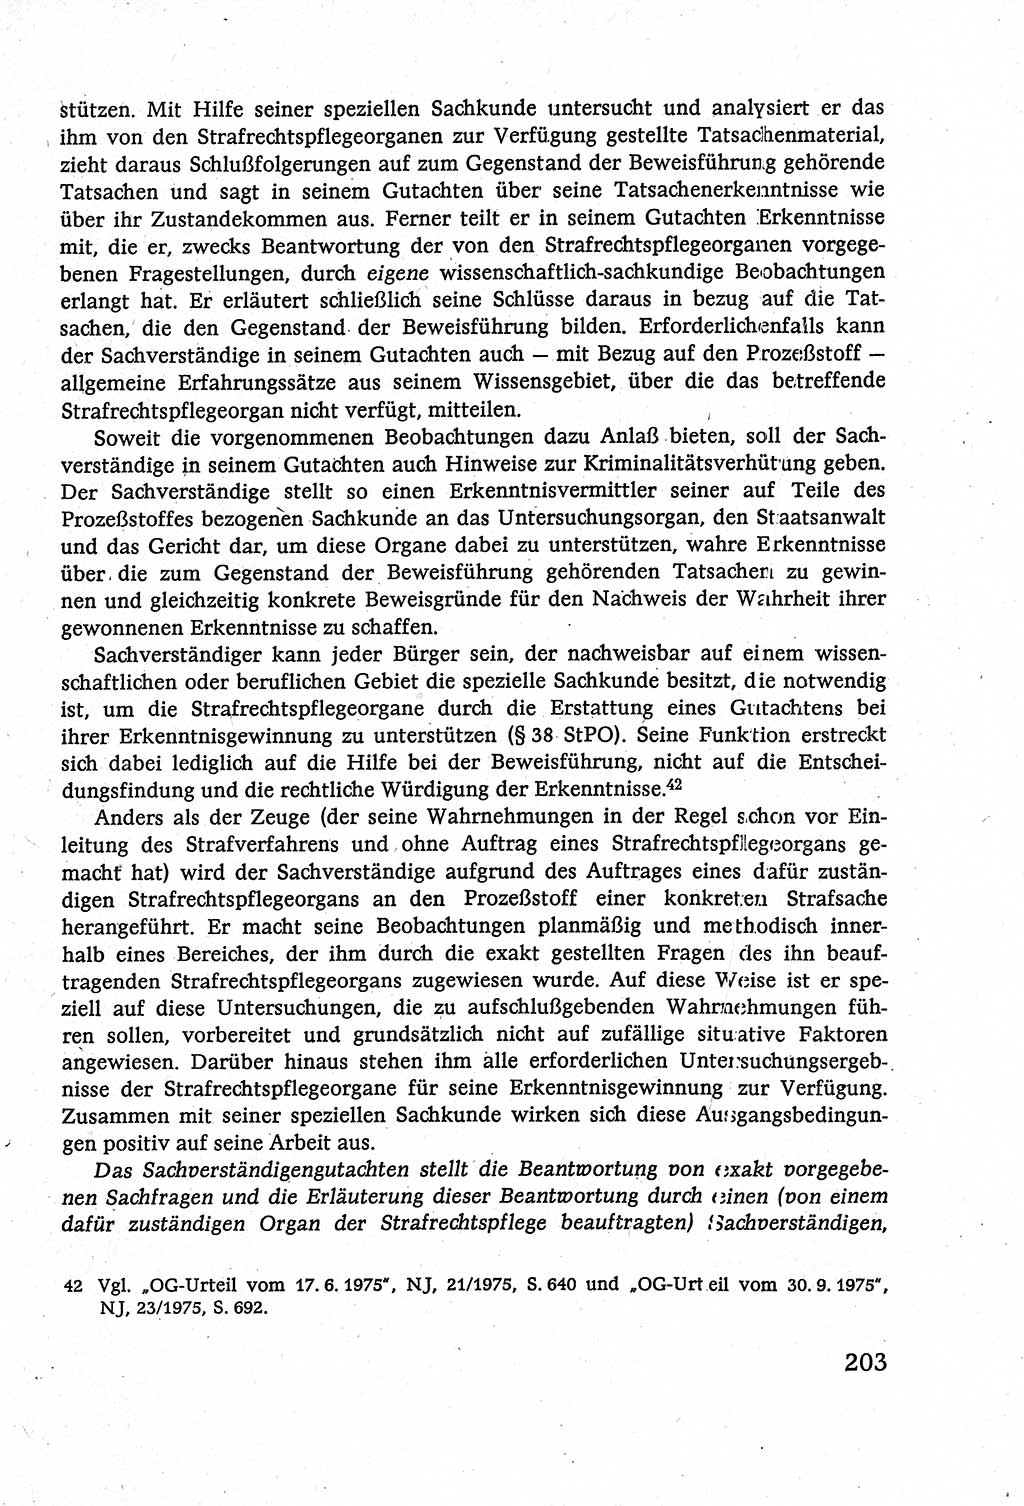 Strafverfahrensrecht [Deutsche Demokratische Republik (DDR)], Lehrbuch 1977, Seite 203 (Strafverf.-R. DDR Lb. 1977, S. 203)